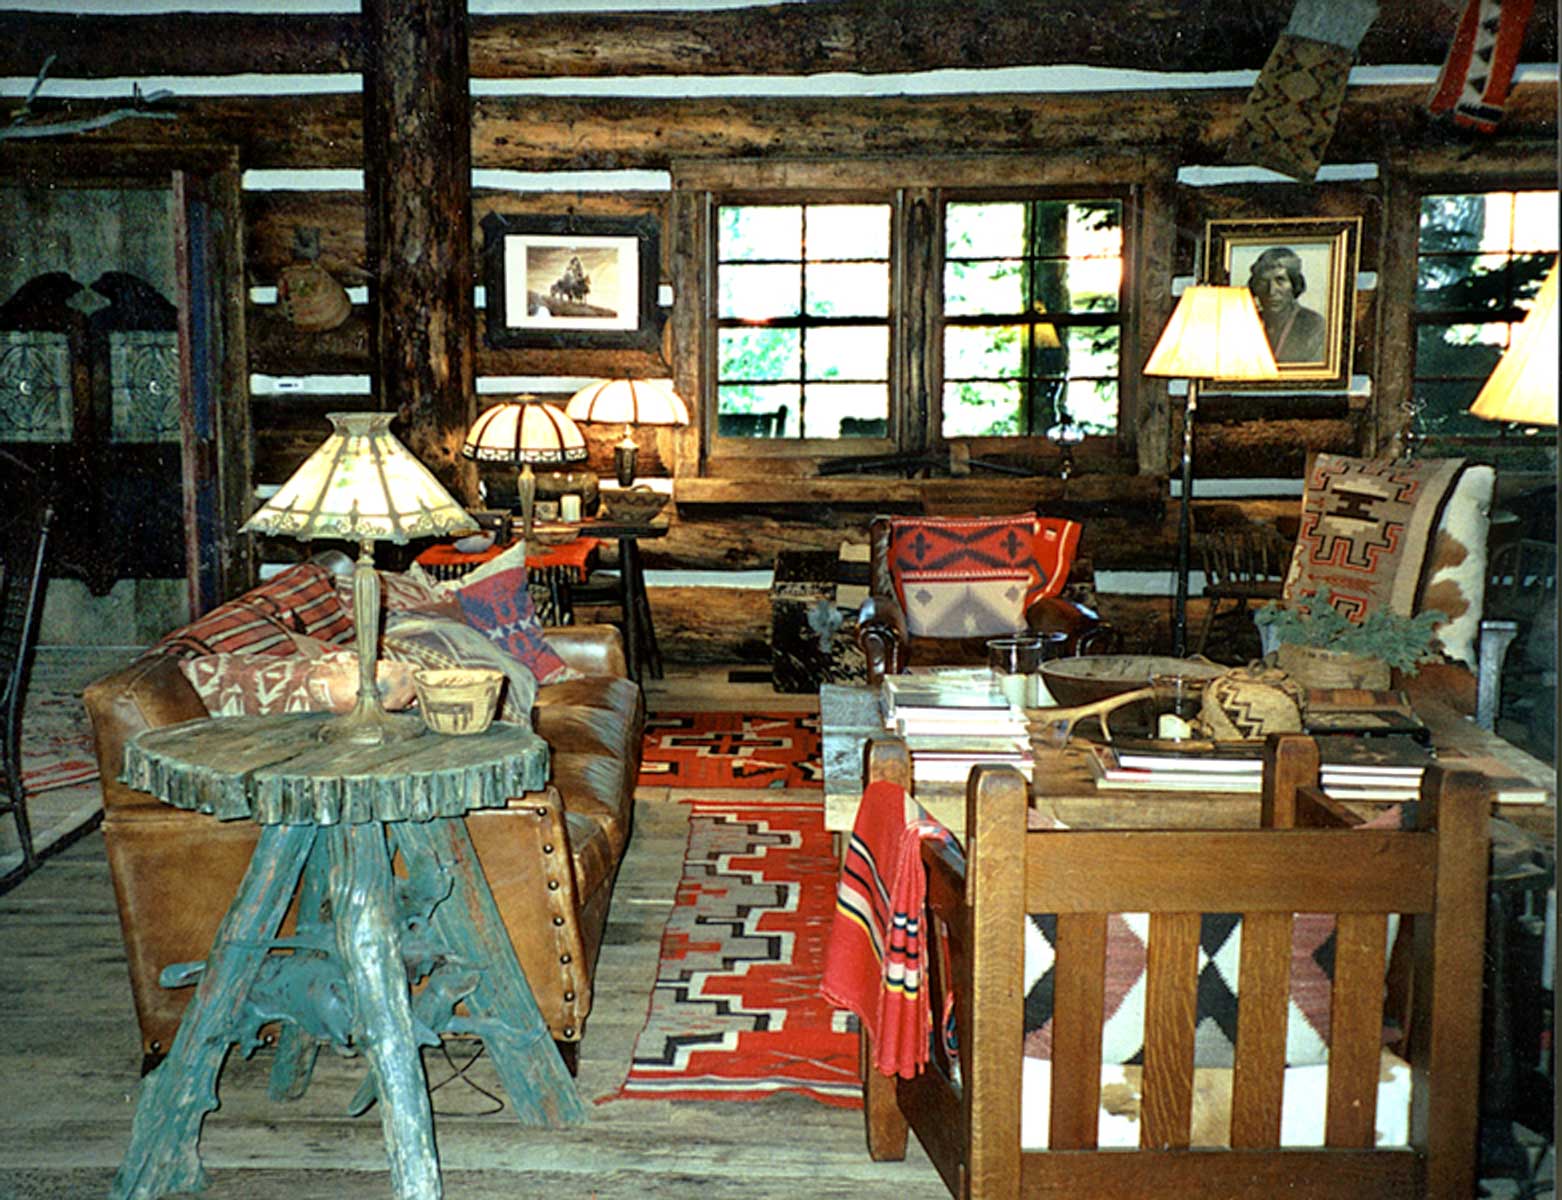 ralph lauren cabin interiors